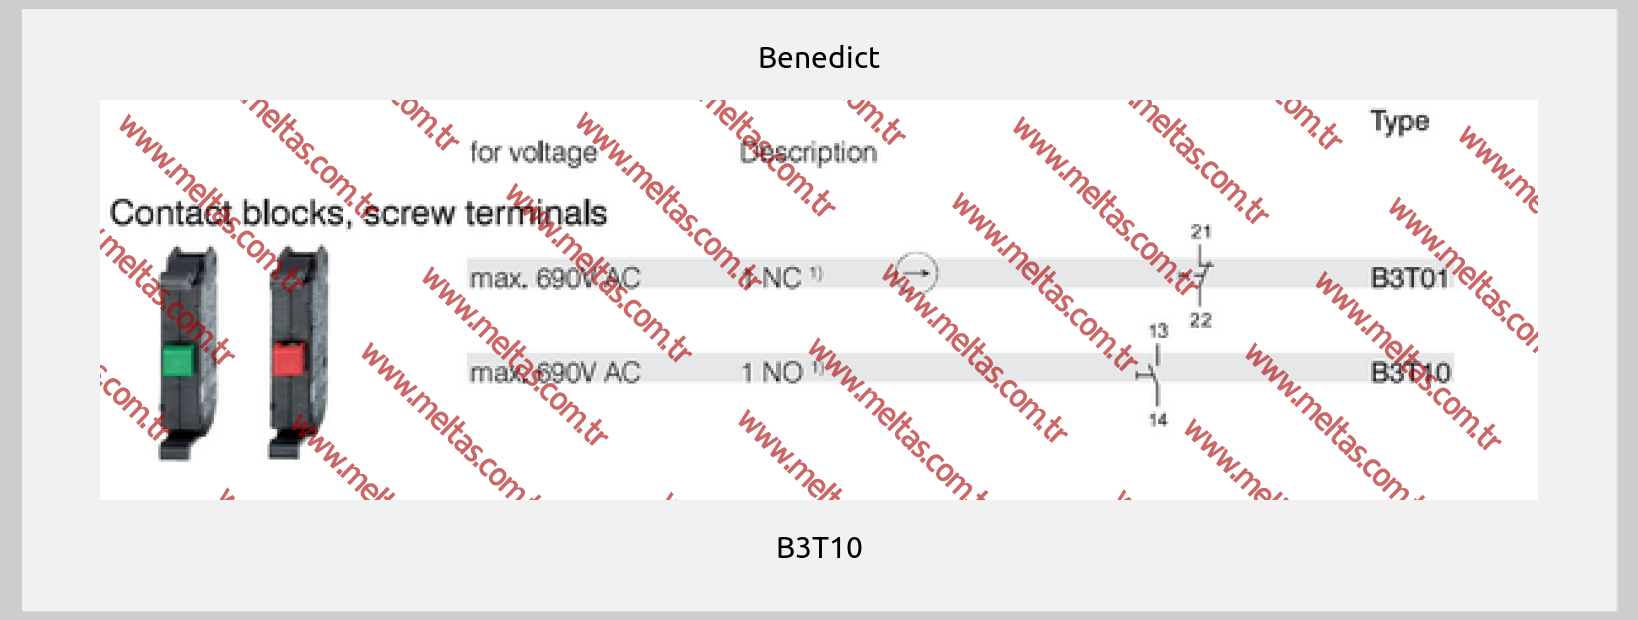 Benedict-B3T10